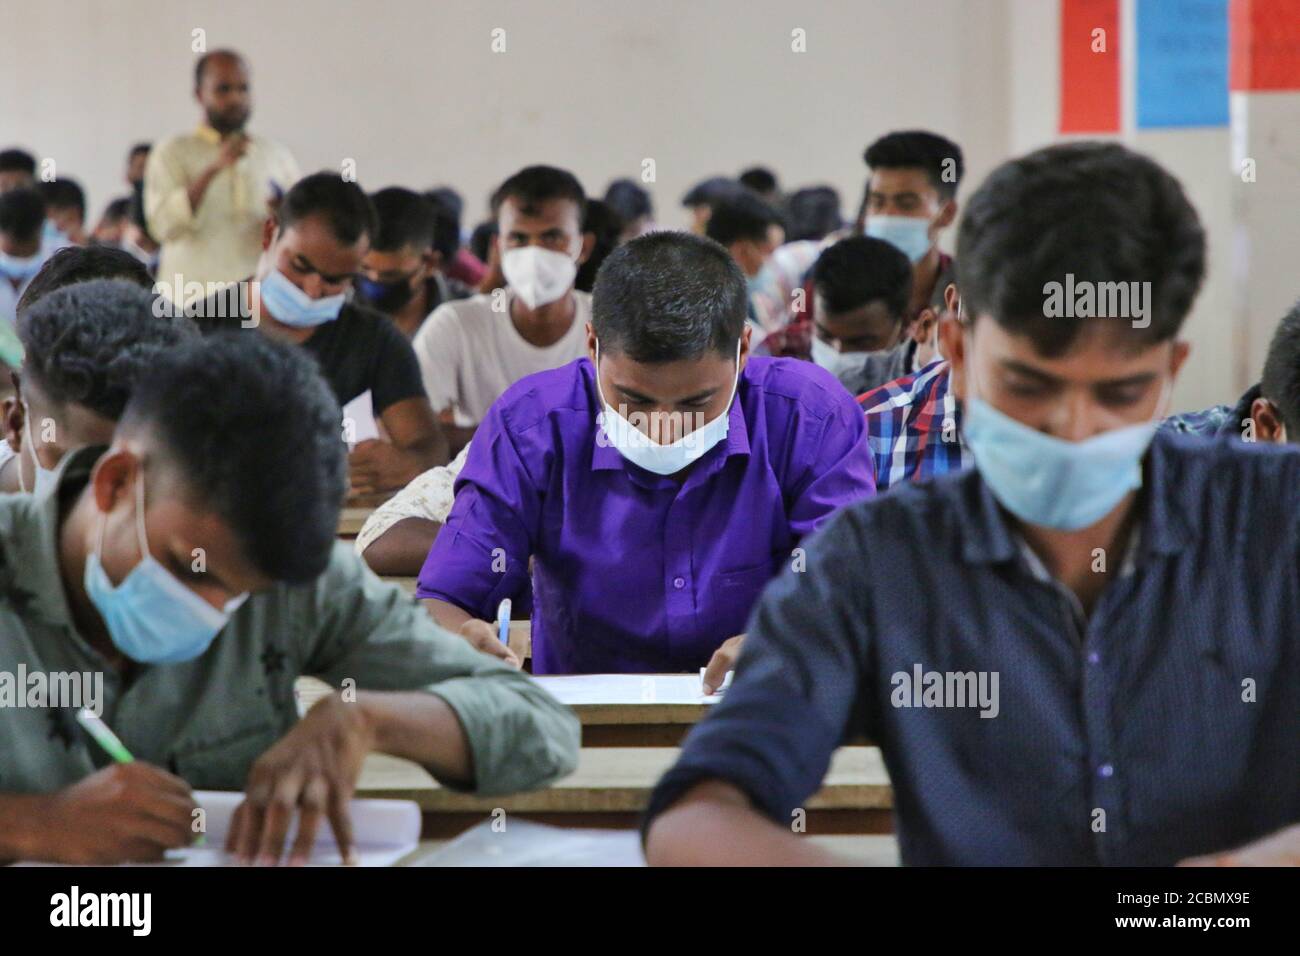 Les candidats portant un masque facial comme mesure préventive lors d'un test de recrutement pour un poste de pompier sous le service des incendies et la Défense civile dans un collège dans un contexte de crise du coronavirus (COVID-19) à Dhaka. Banque D'Images